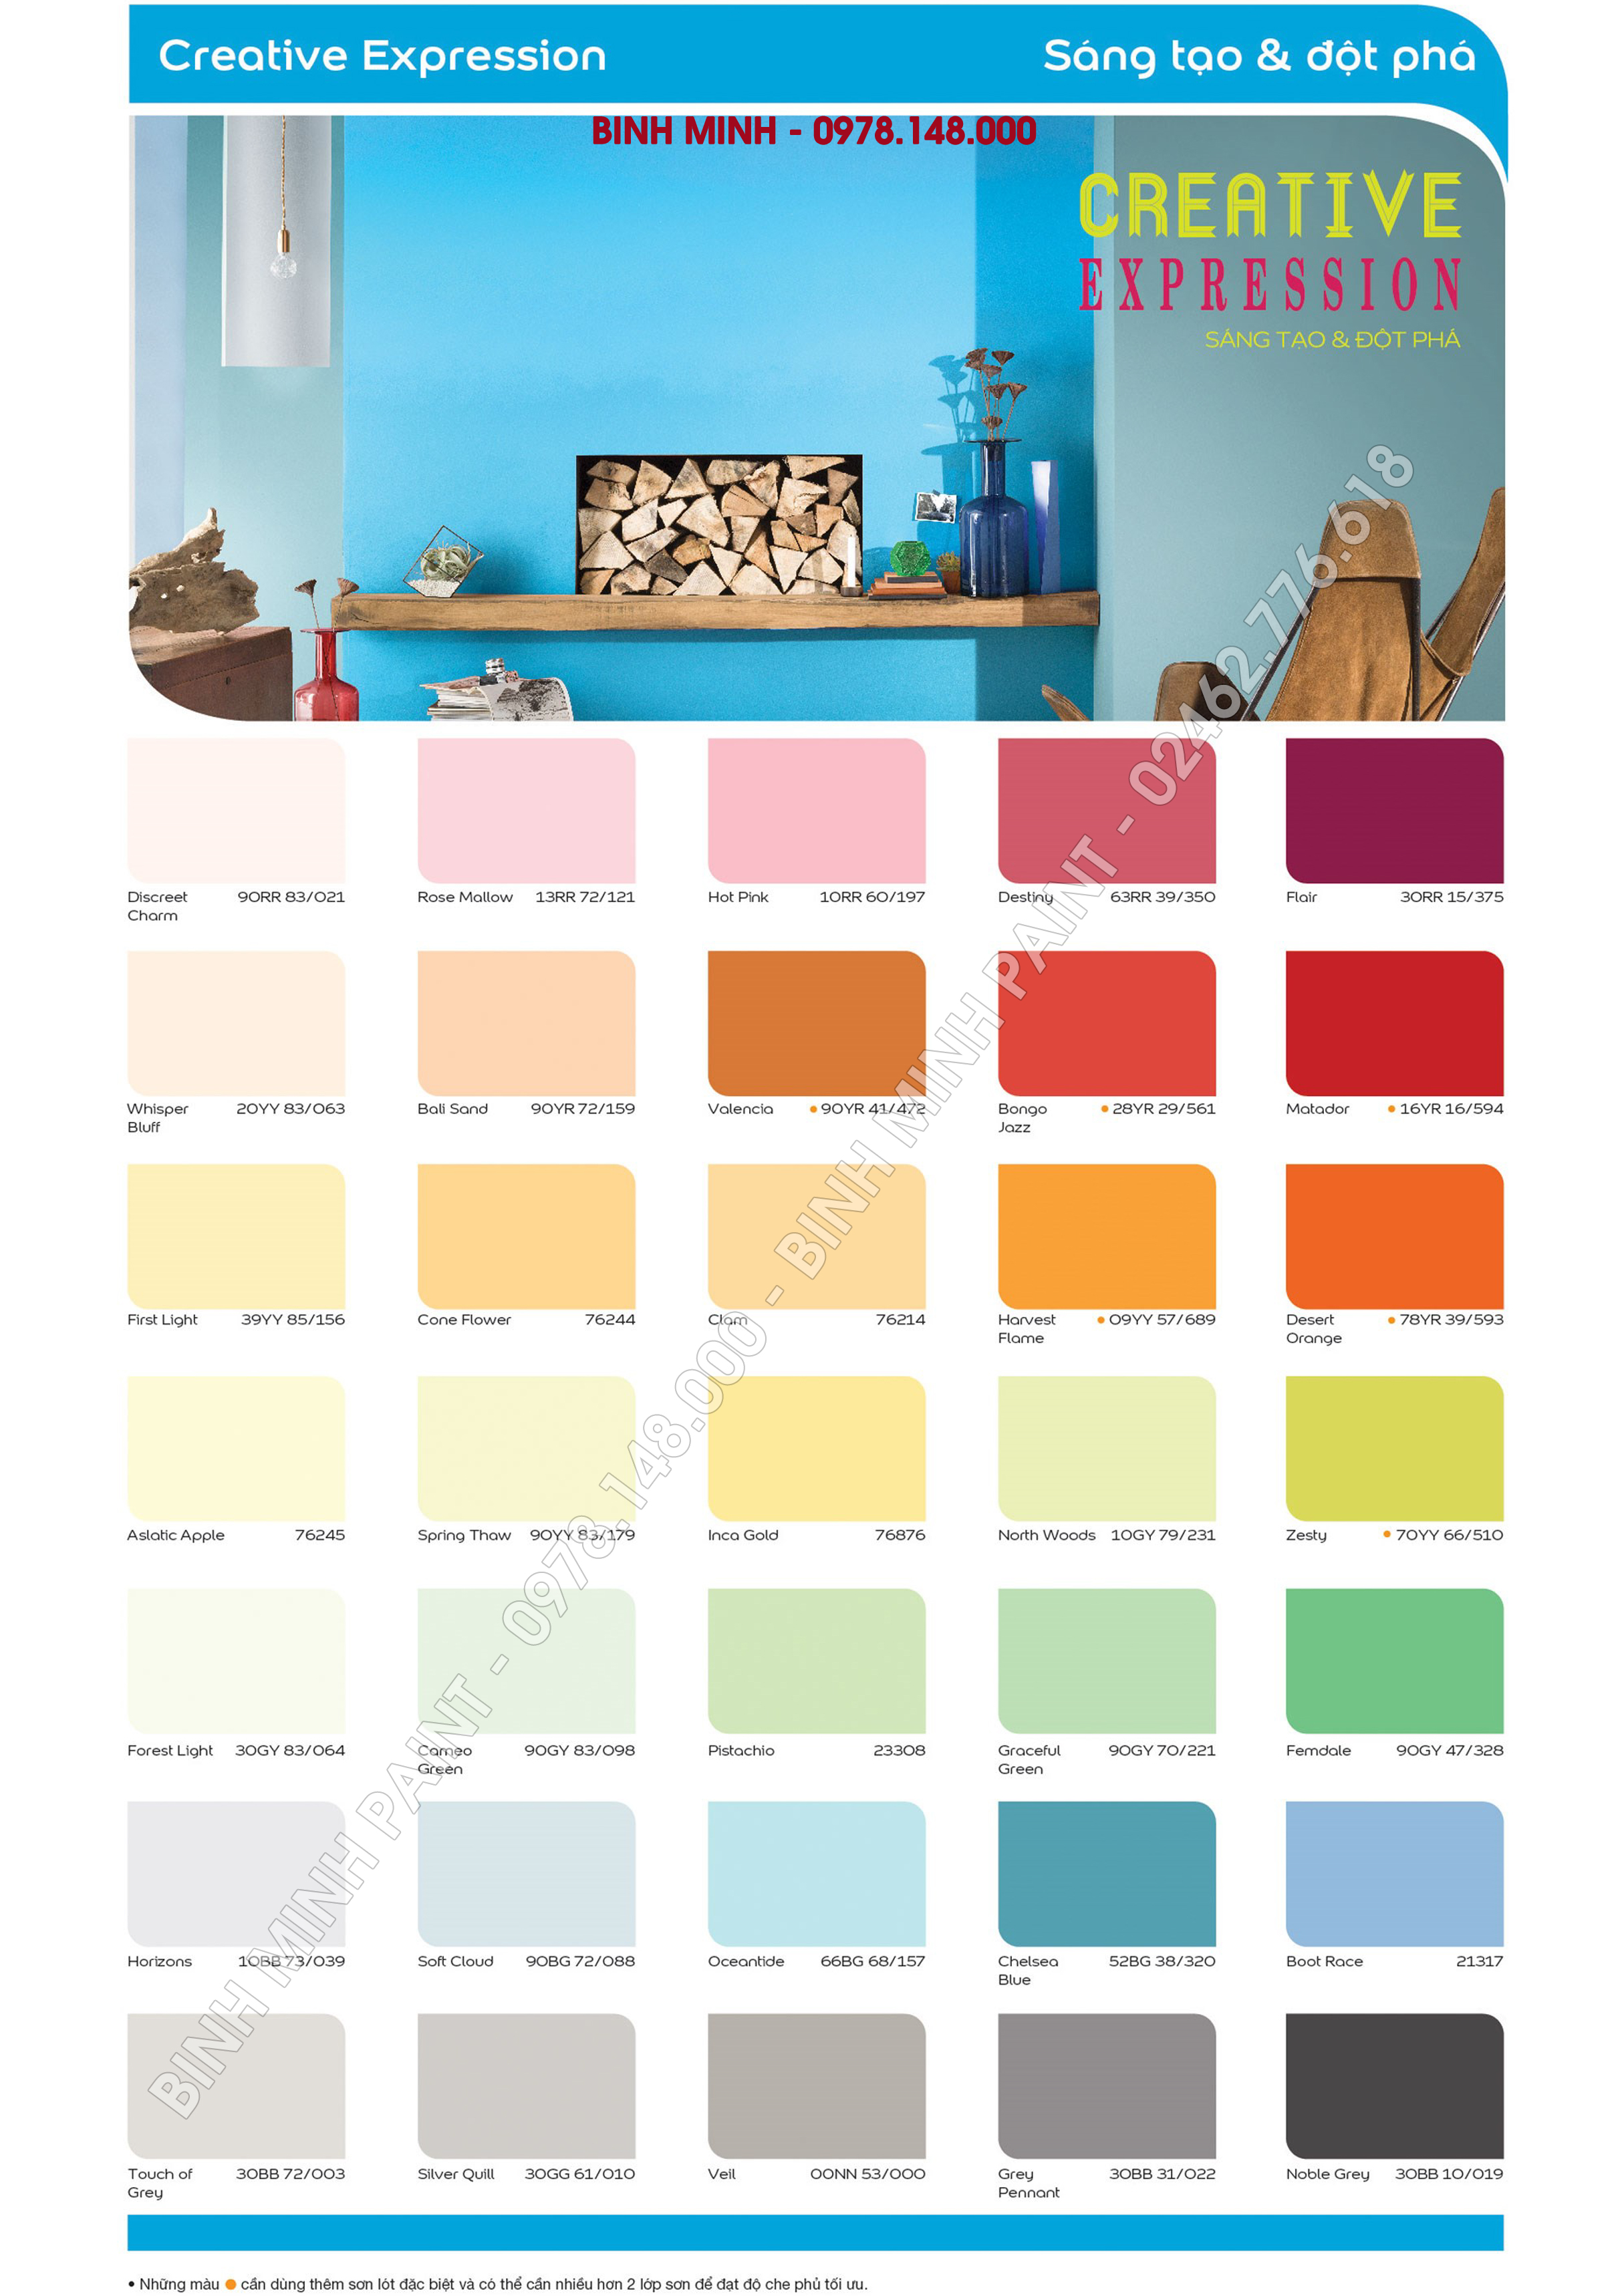 Khám phá bảng màu sơn Dulux đa dạng và đặc biệt tại đây. Từ màu sáng tươi đến tối mịn, sắc màu trung thực và bền màu được cam kết. Luôn tin cậy vào những gì mà Dulux có thể mang lại cho ngôi nhà của bạn.